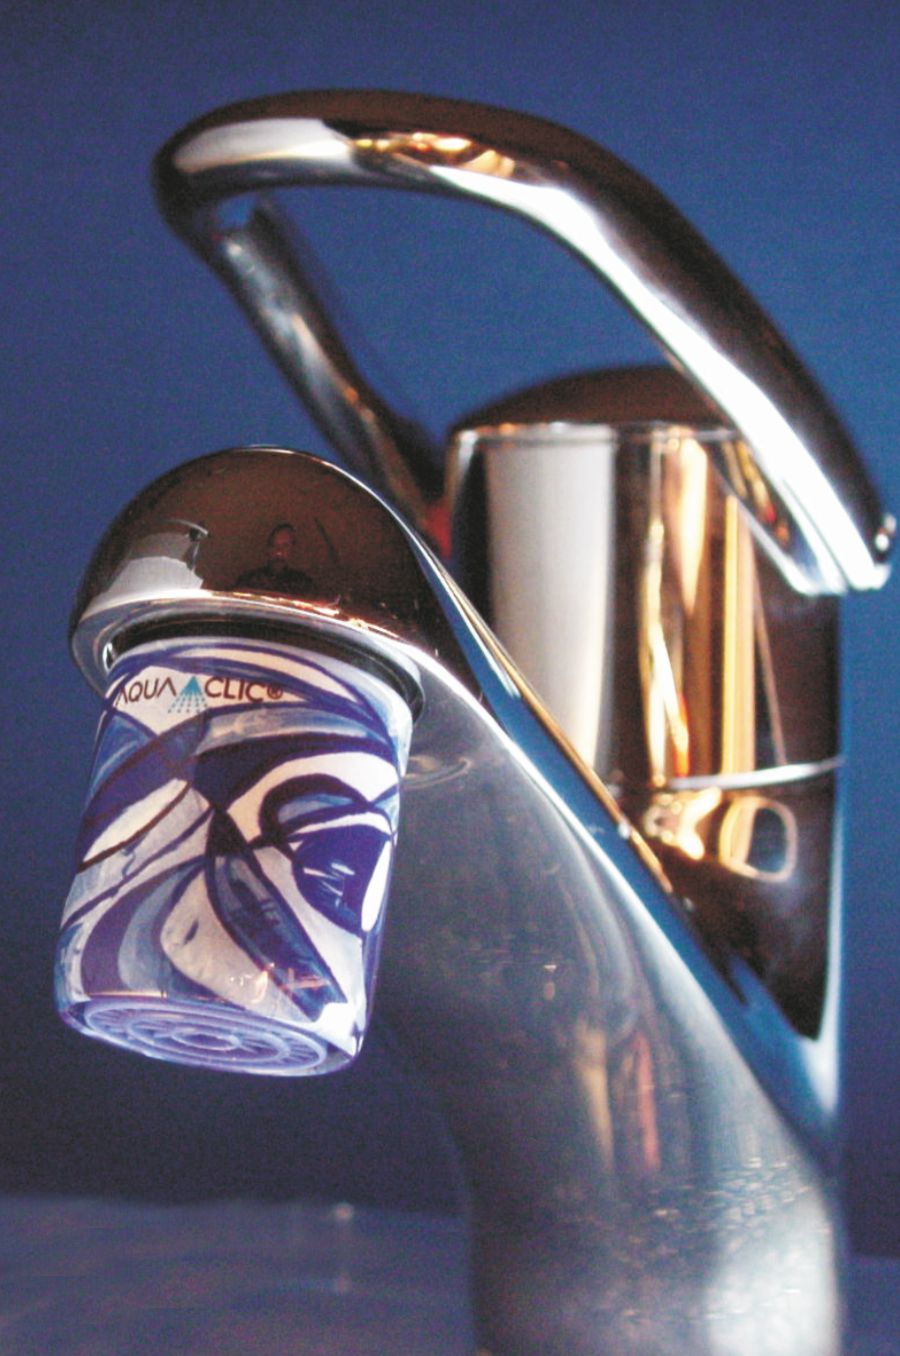 Régulateur de jet perlé pour le robinet avecMovimento-Design AquaClic-régulateur de jet : réduit la consommation d'eau et embellit le robinet